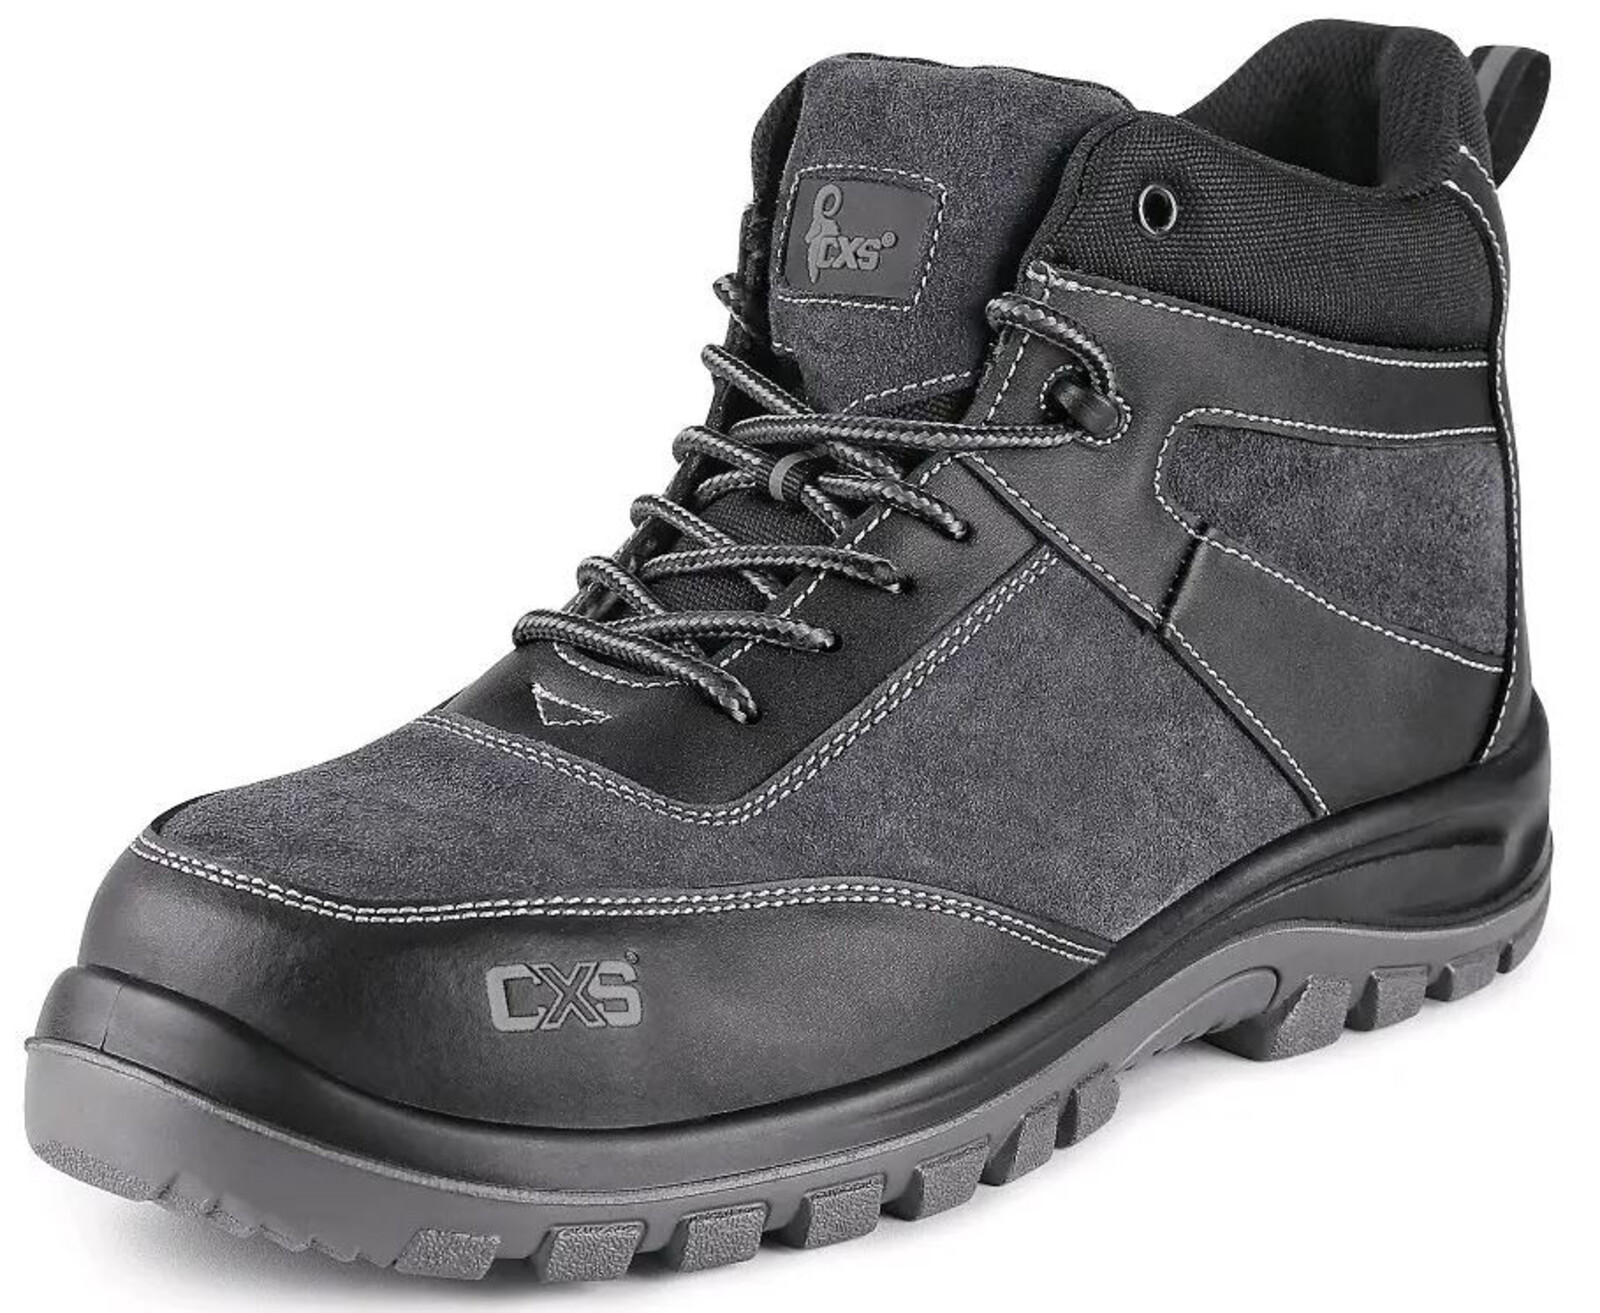 Pracovná členková obuv CXS Profit Win O1 FO SRC - veľkosť: 39, farba: čierna/sivá